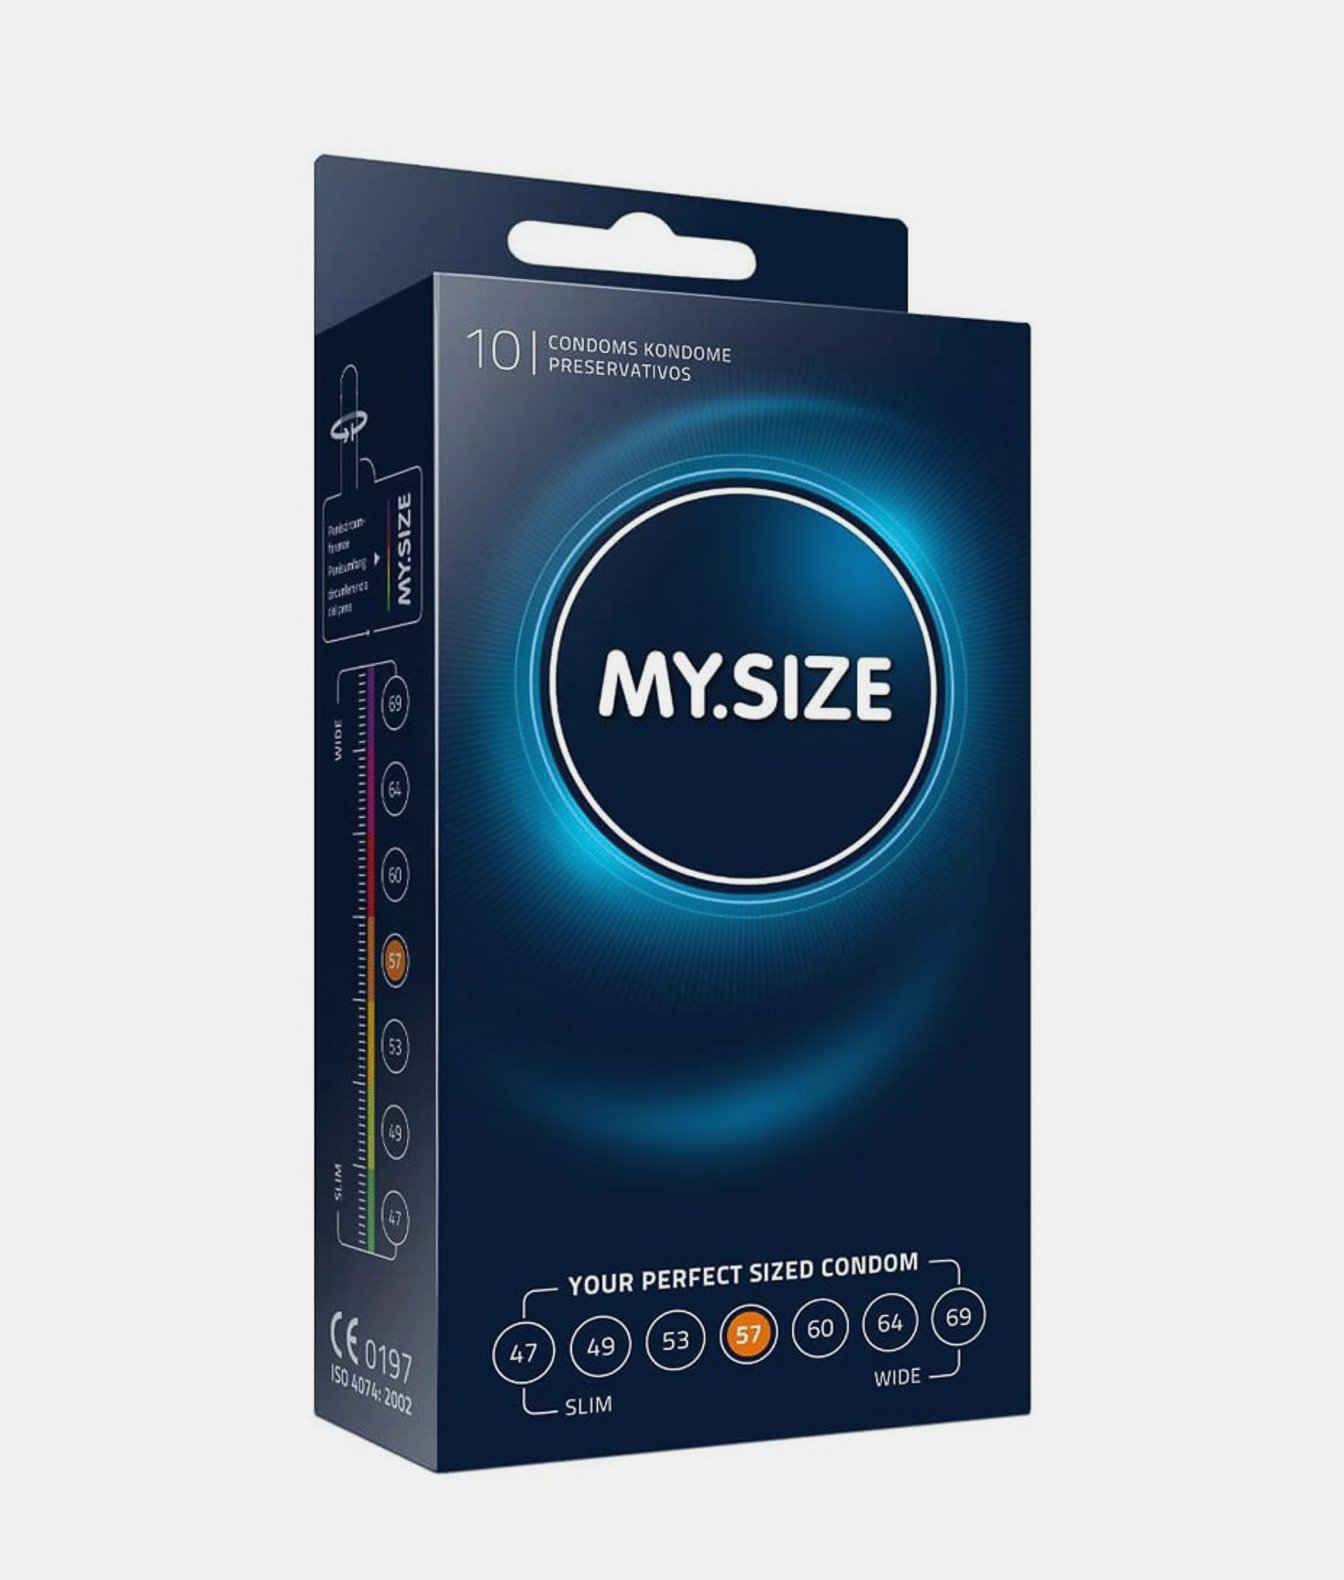 MY.SIZE 57 prezerwatywy dla obwodu 11.5-12 cm